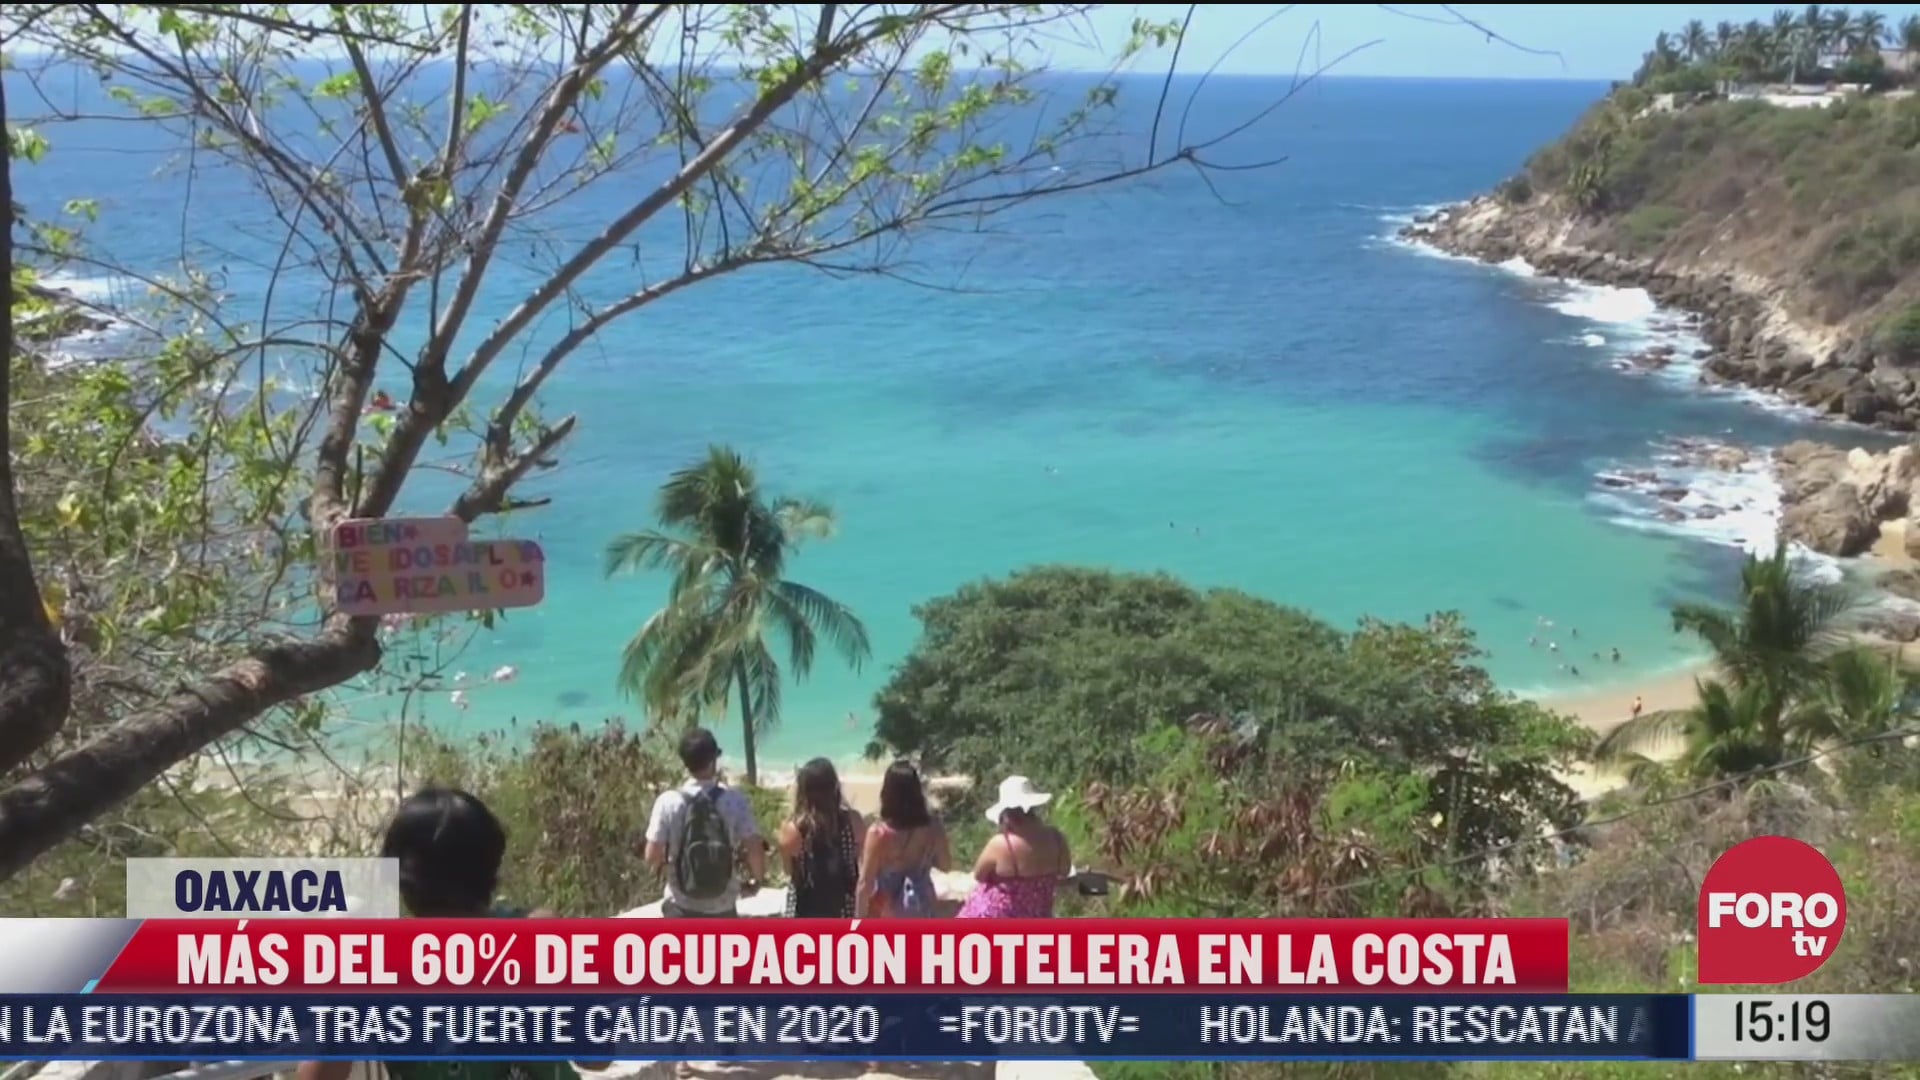 playas de oaxaca con mas del 60 de ocupacion hotelera